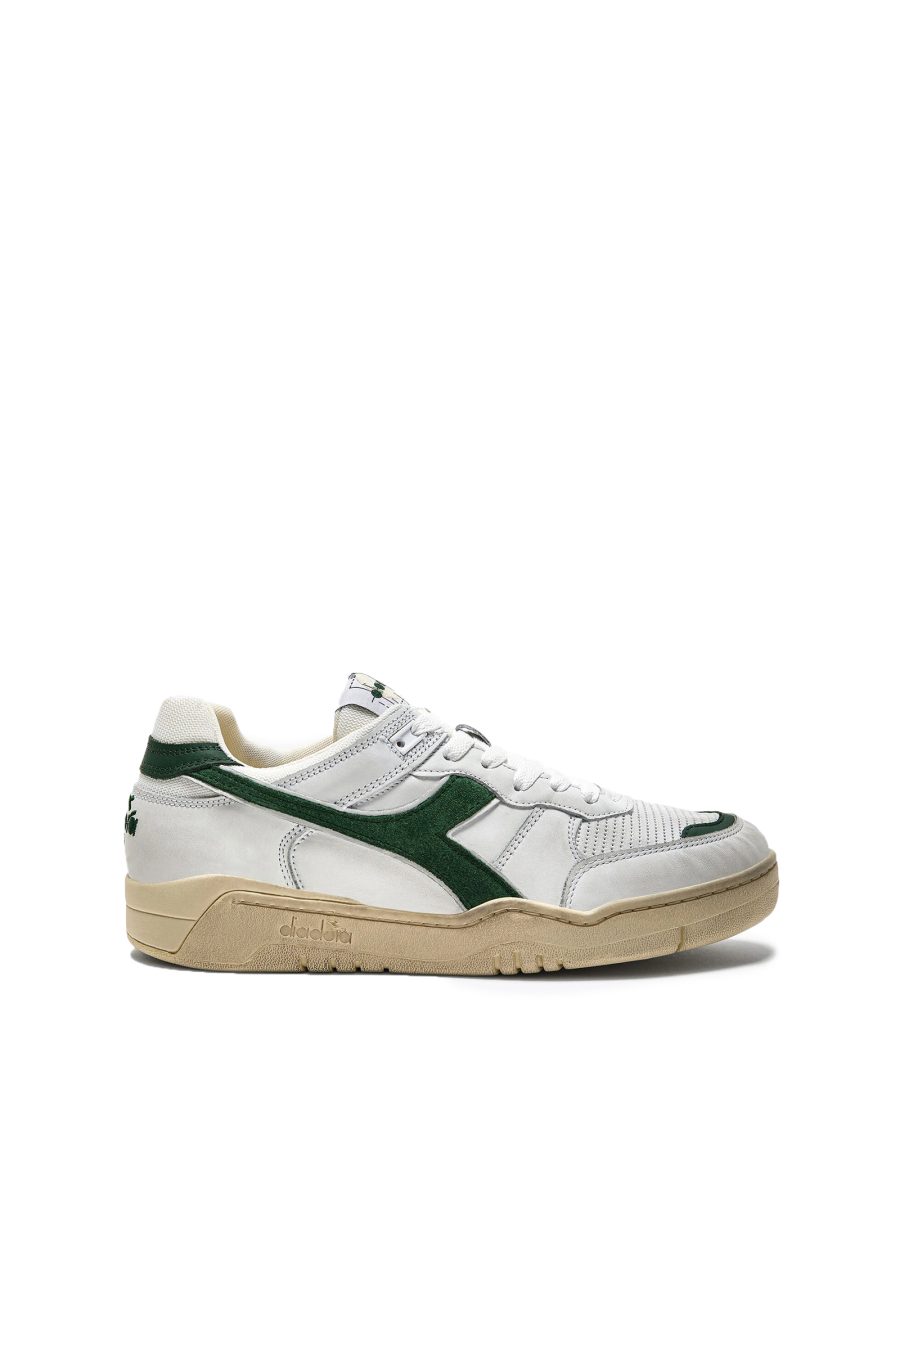 Diadora Sneakers Green